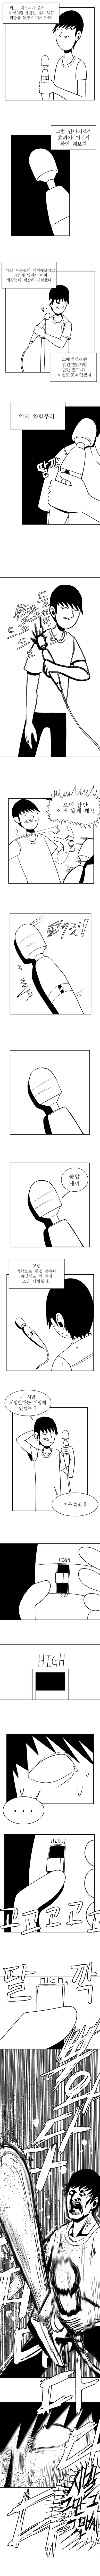 유명 안마기 후기 만화.jpg